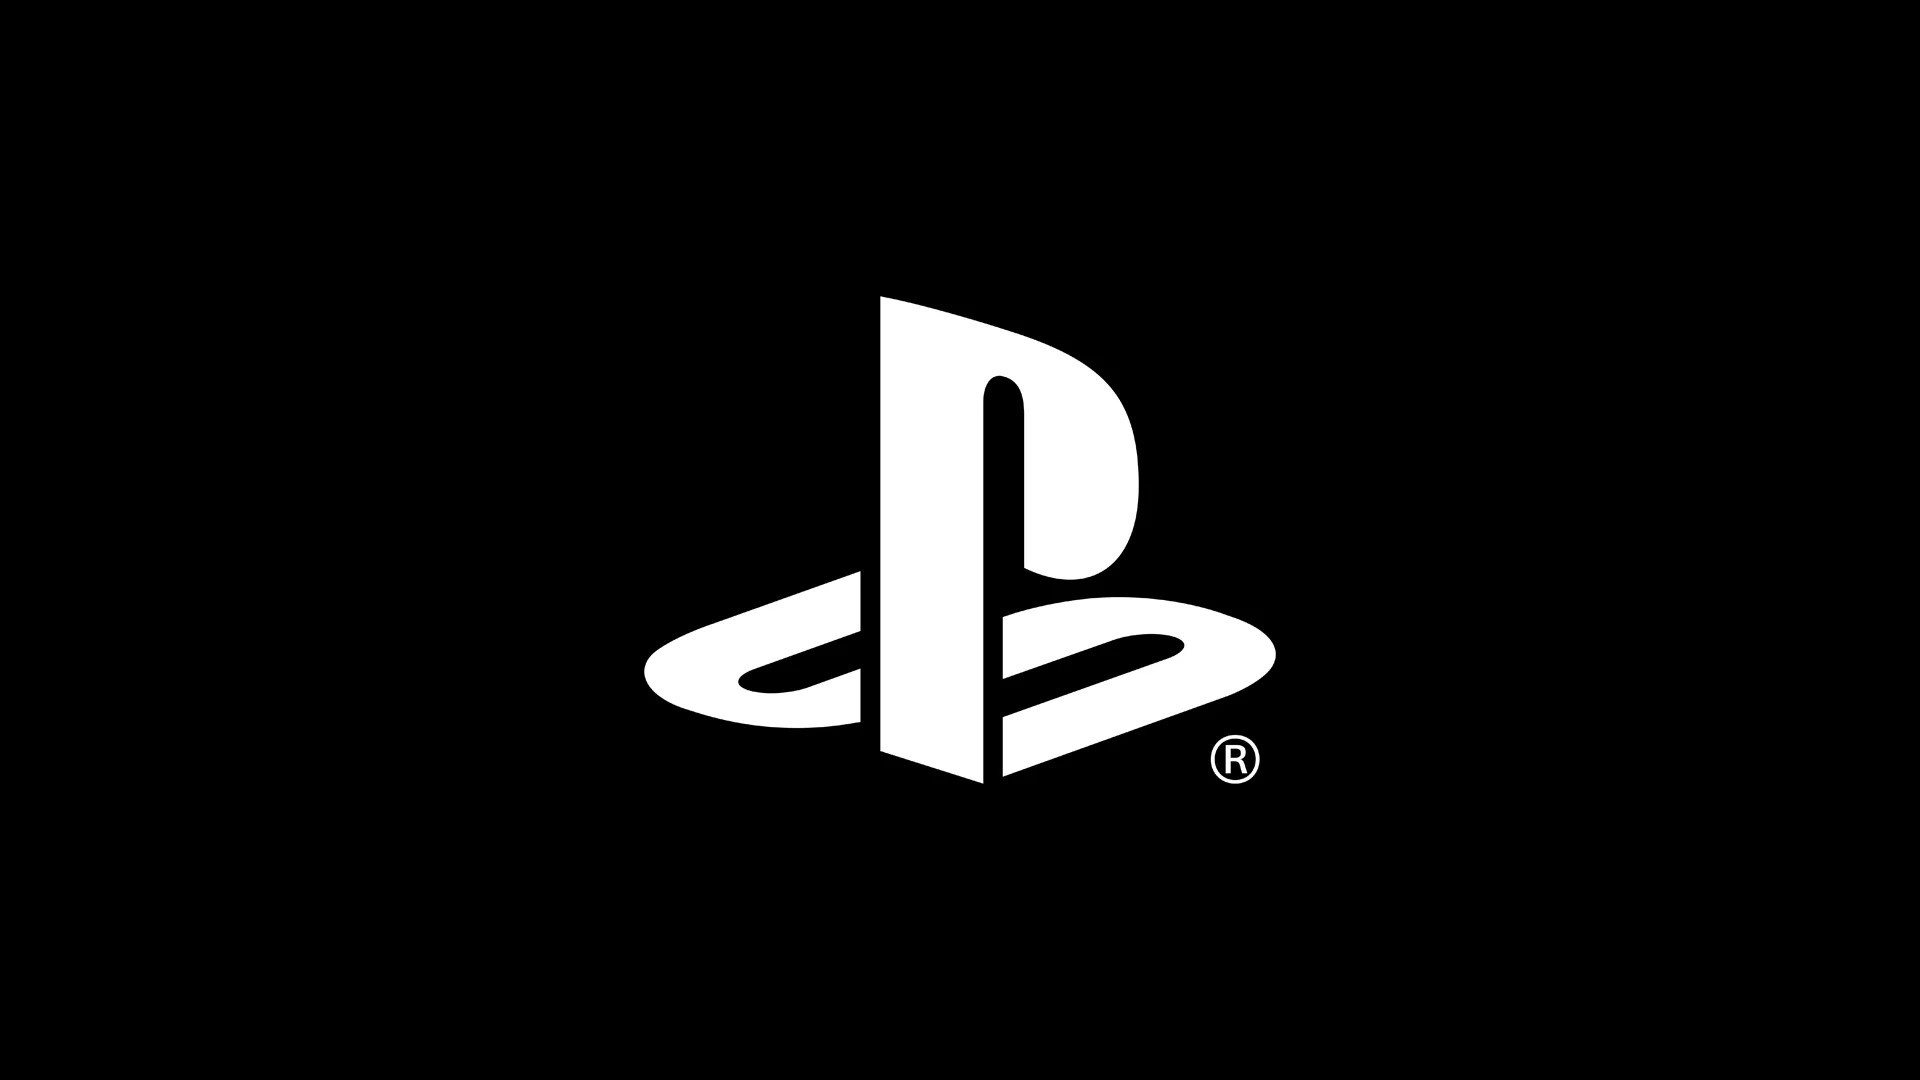 Sony pensa già a PlayStation 6? Si, ma non lo dice esplicitamente